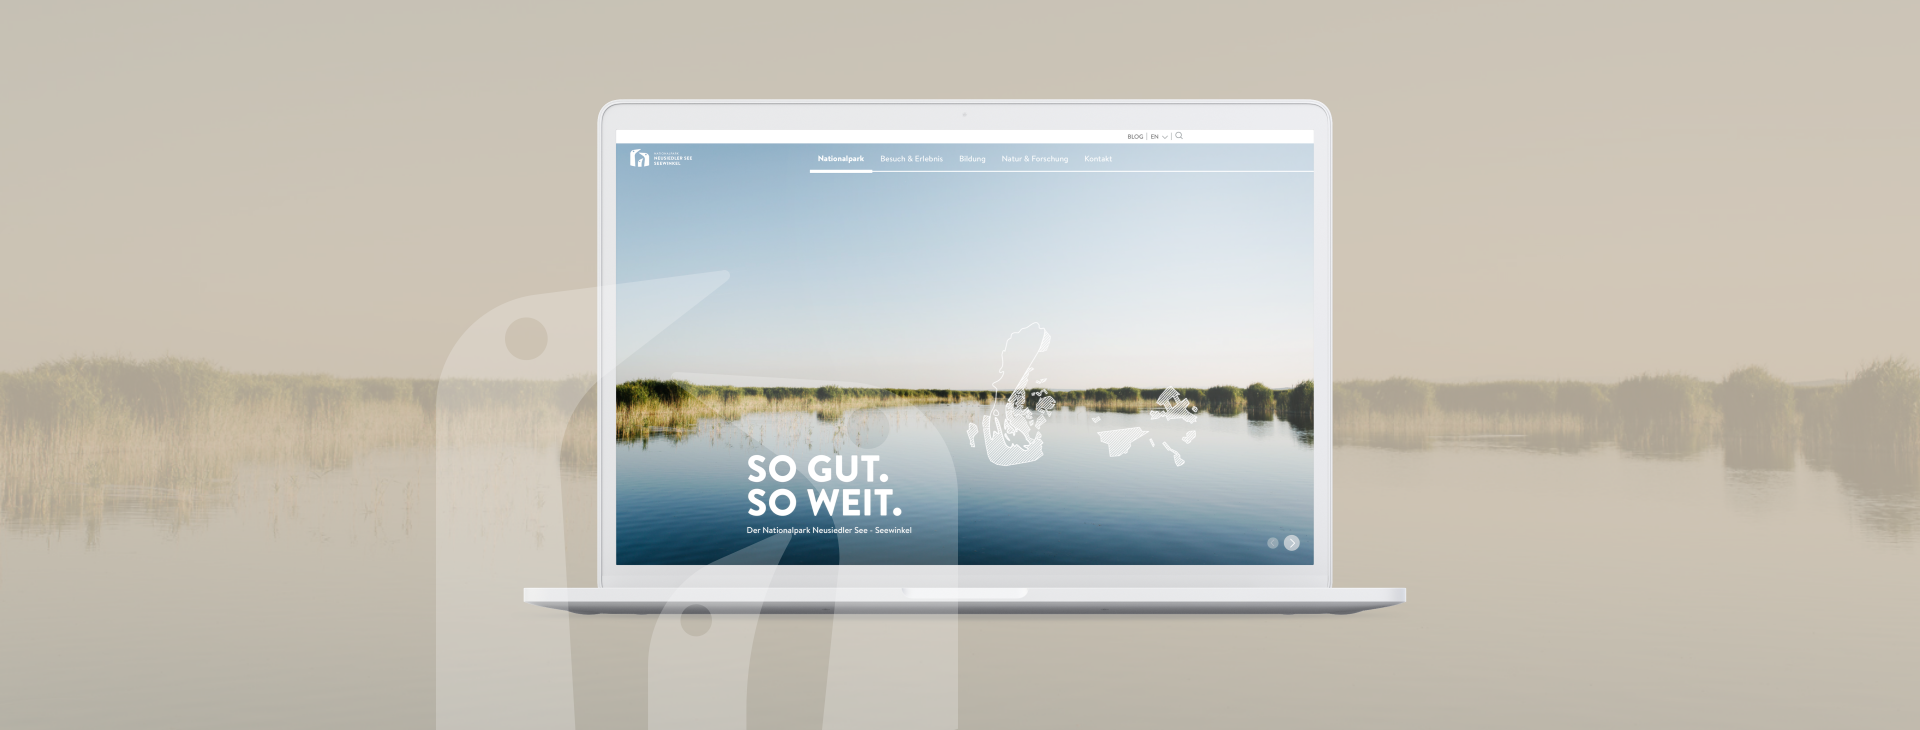 Nationalpark Neusiedlersee Seewinkel Website overview | Übersicht